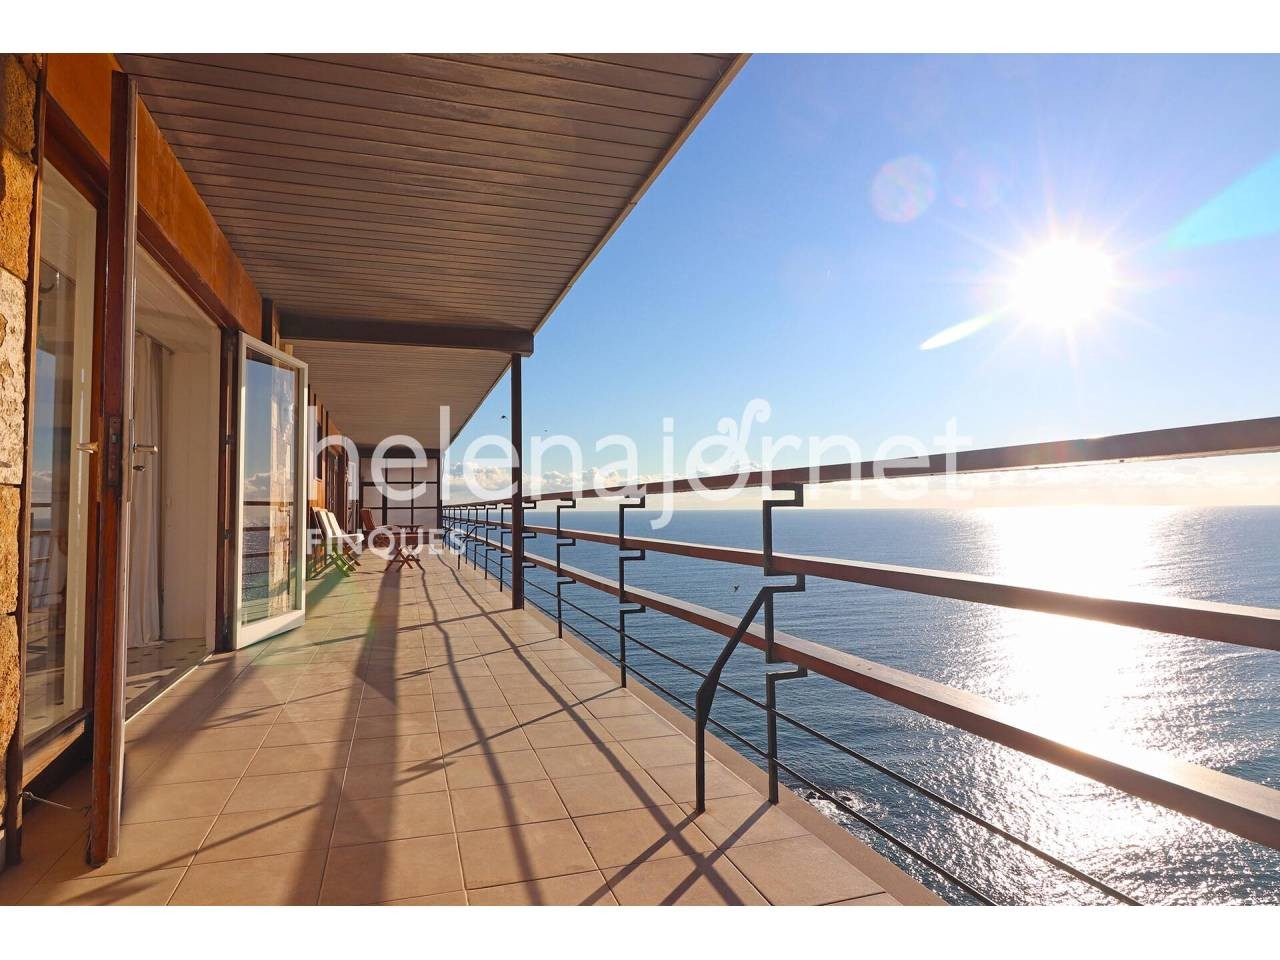 Excepcional apartamento con vistas al mar situado en el edificio Eden Mar de Torre Valentina. - 20007